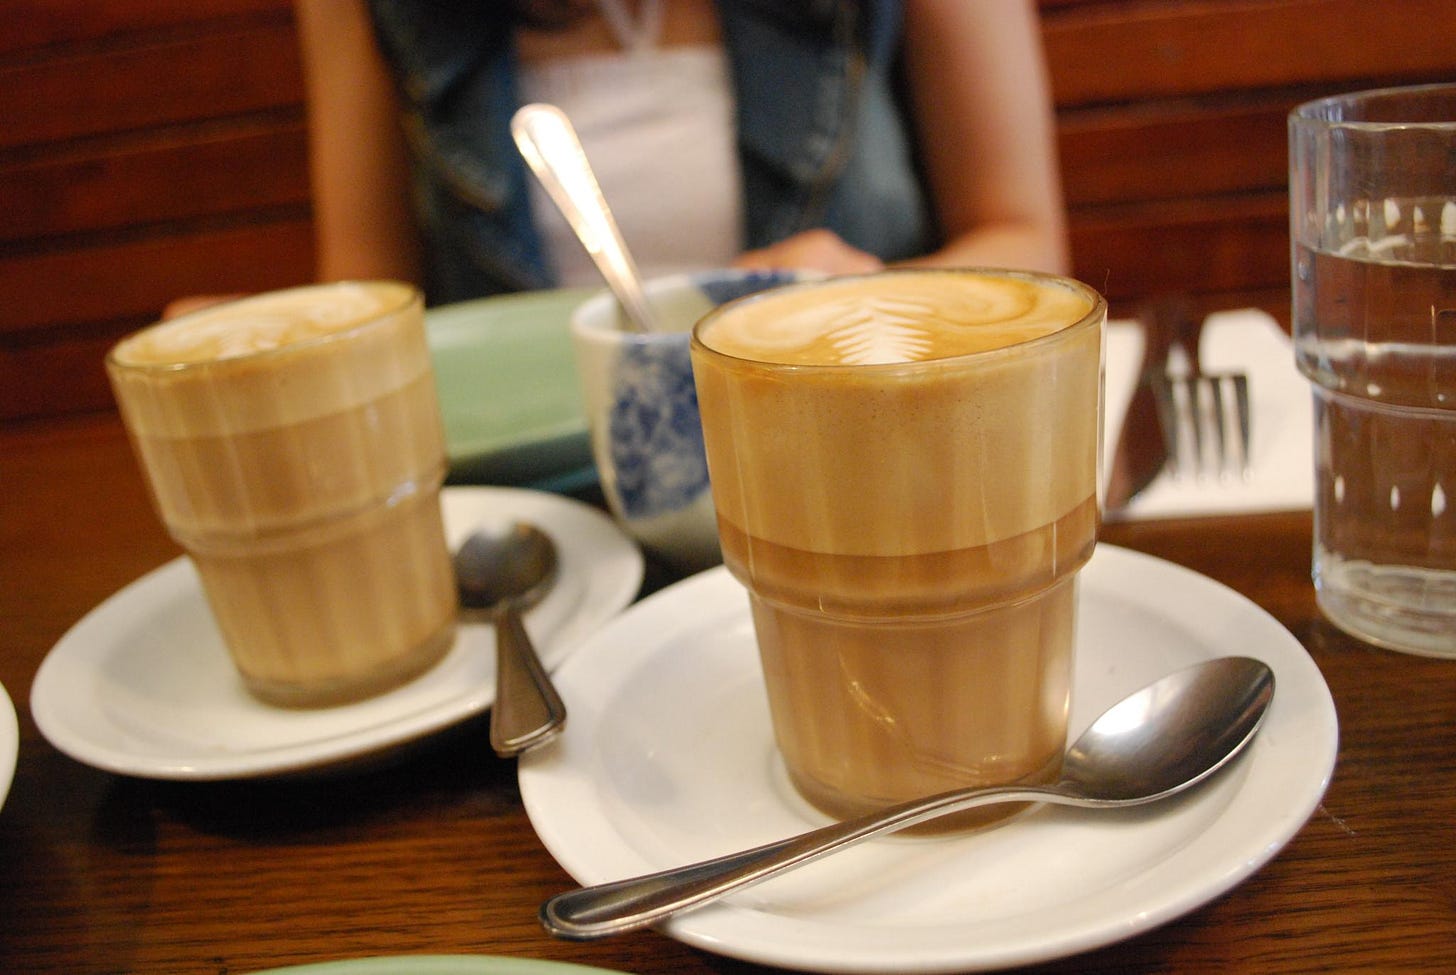 File:Soymilk caffe latte art2 flickr user avlxyz.jpg - Wikimedia Commons